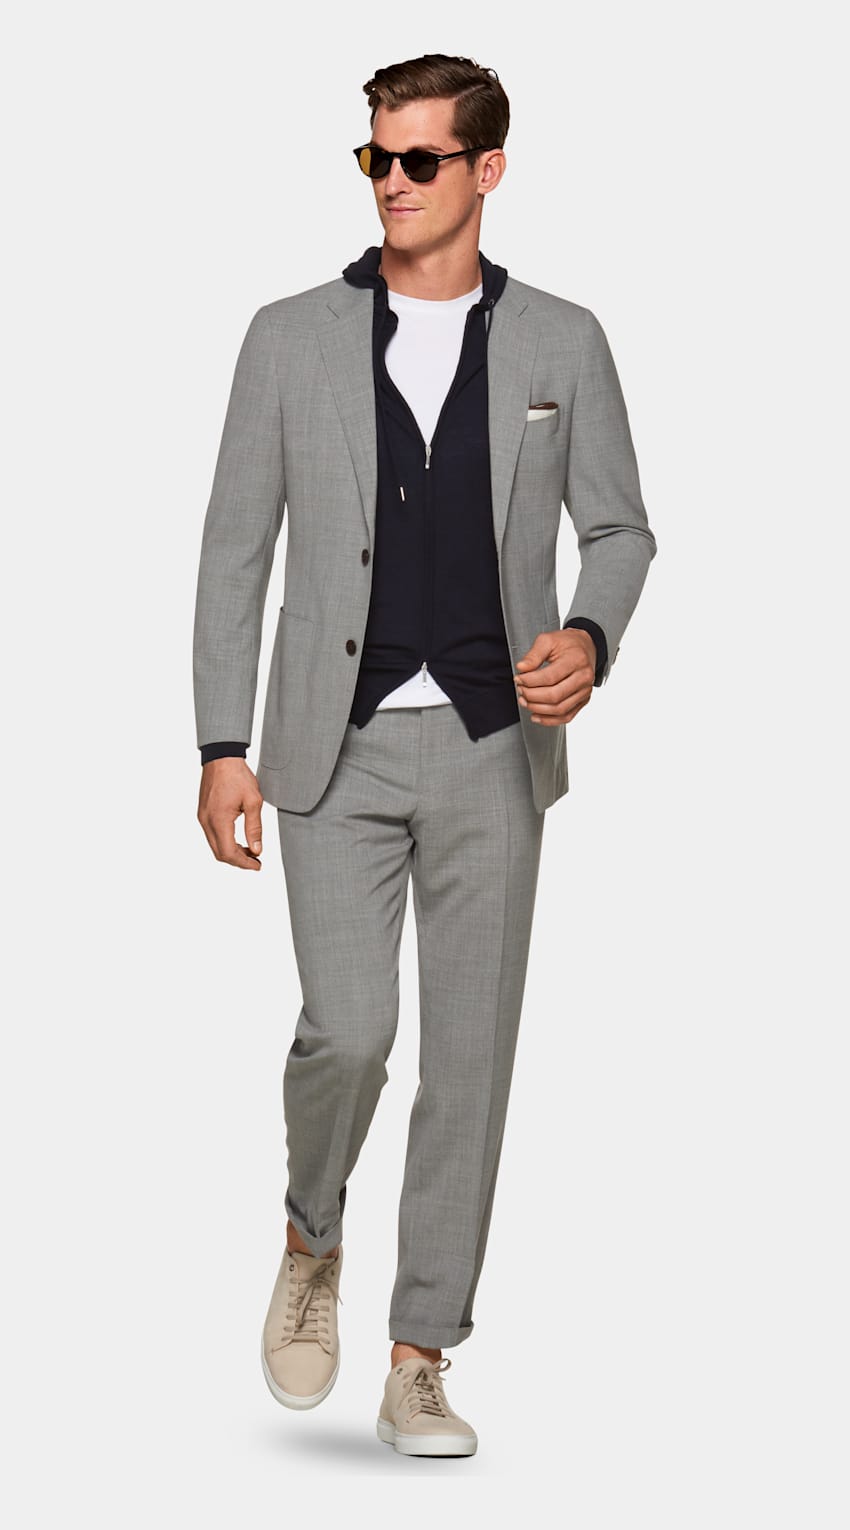 SUITSUPPLY  by Lanificio Cerruti, Italy Light Grey Havana Suit